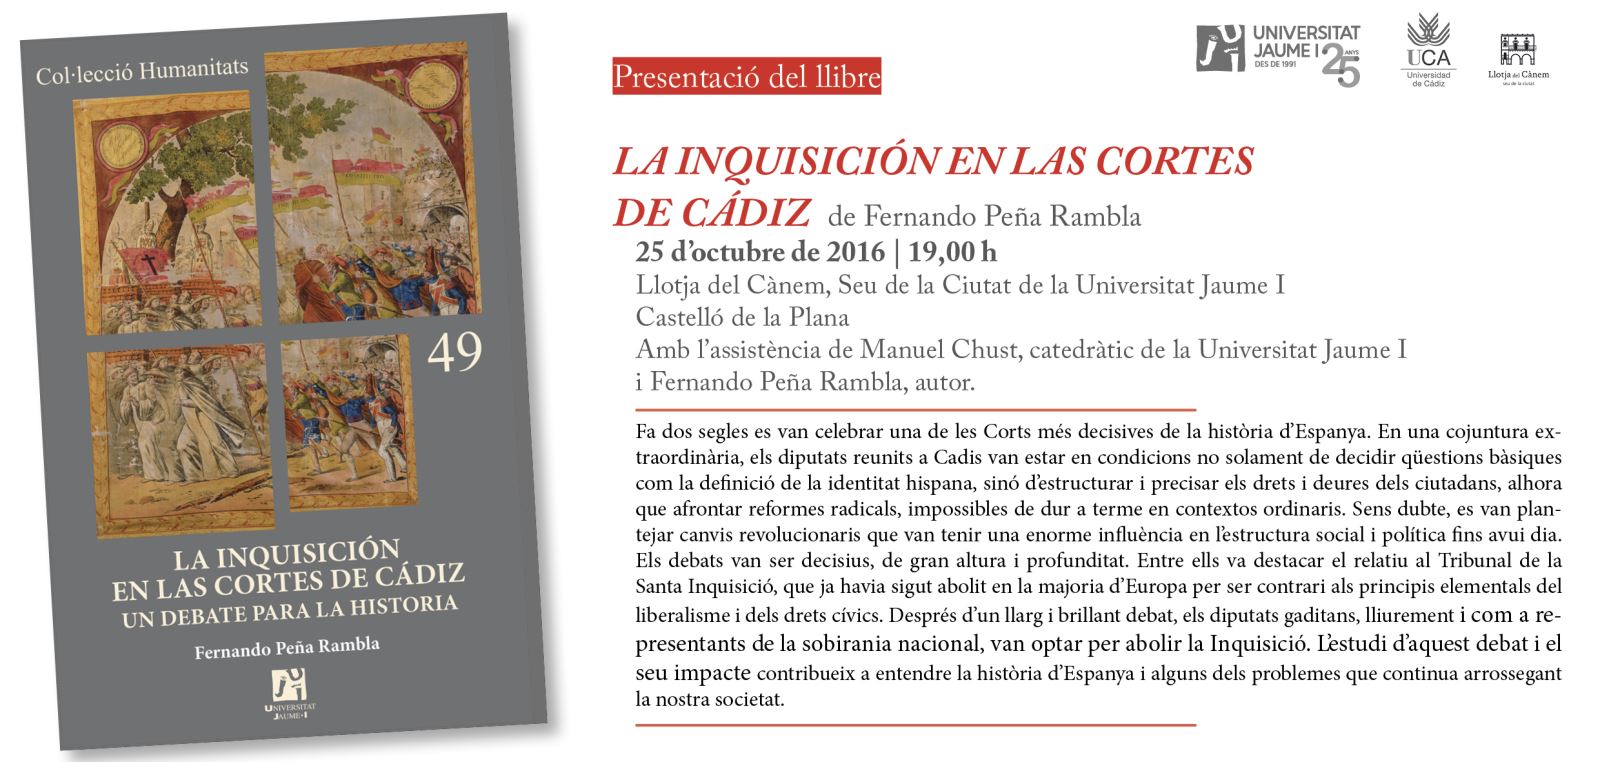 Publicaciones de la Universitat Jaume I presenta "La Inquisición en las Cortes de Cádiz"